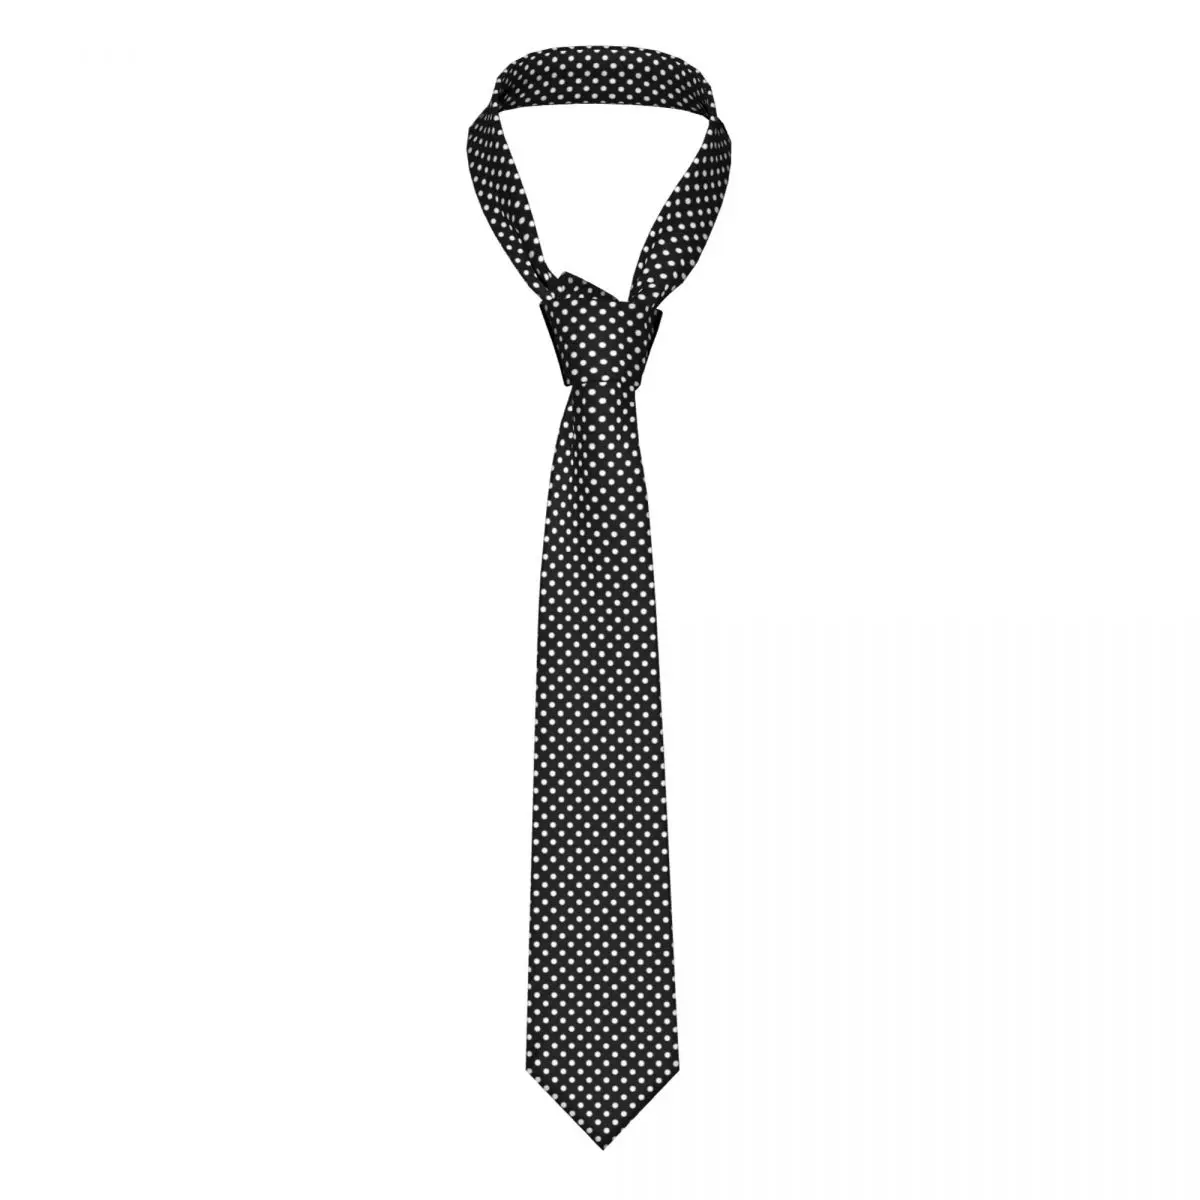 

Черный, белый галстук в горошек, классическая блузка с принтом в горошек, галстуки на шею с принтом, деловые аксессуары из полиэстера и шелка...